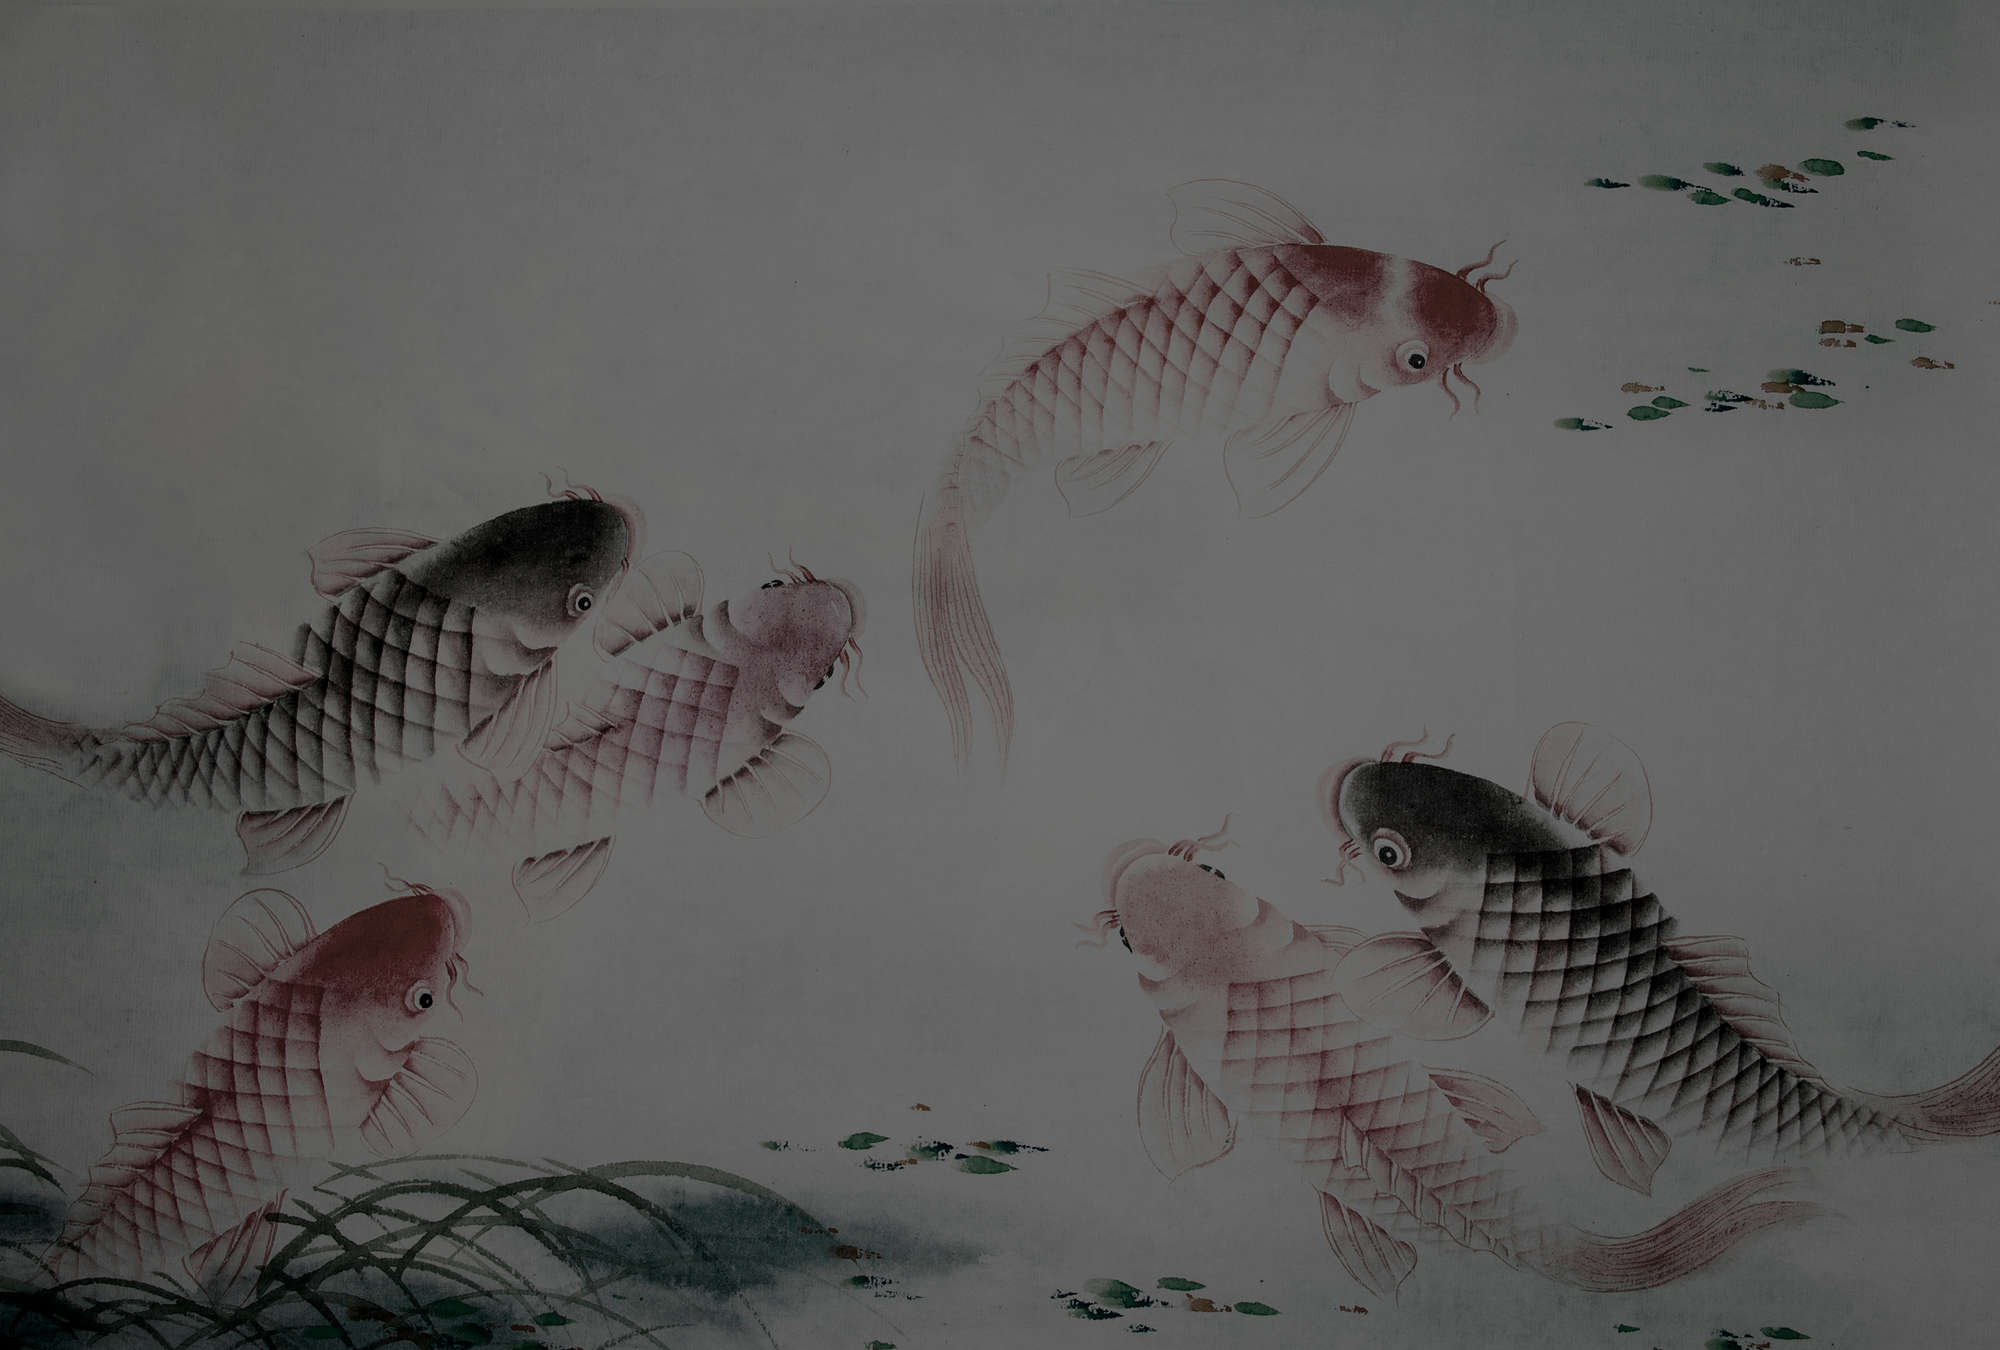             Photo wallpaper Asia Style with koi pond - grey
        